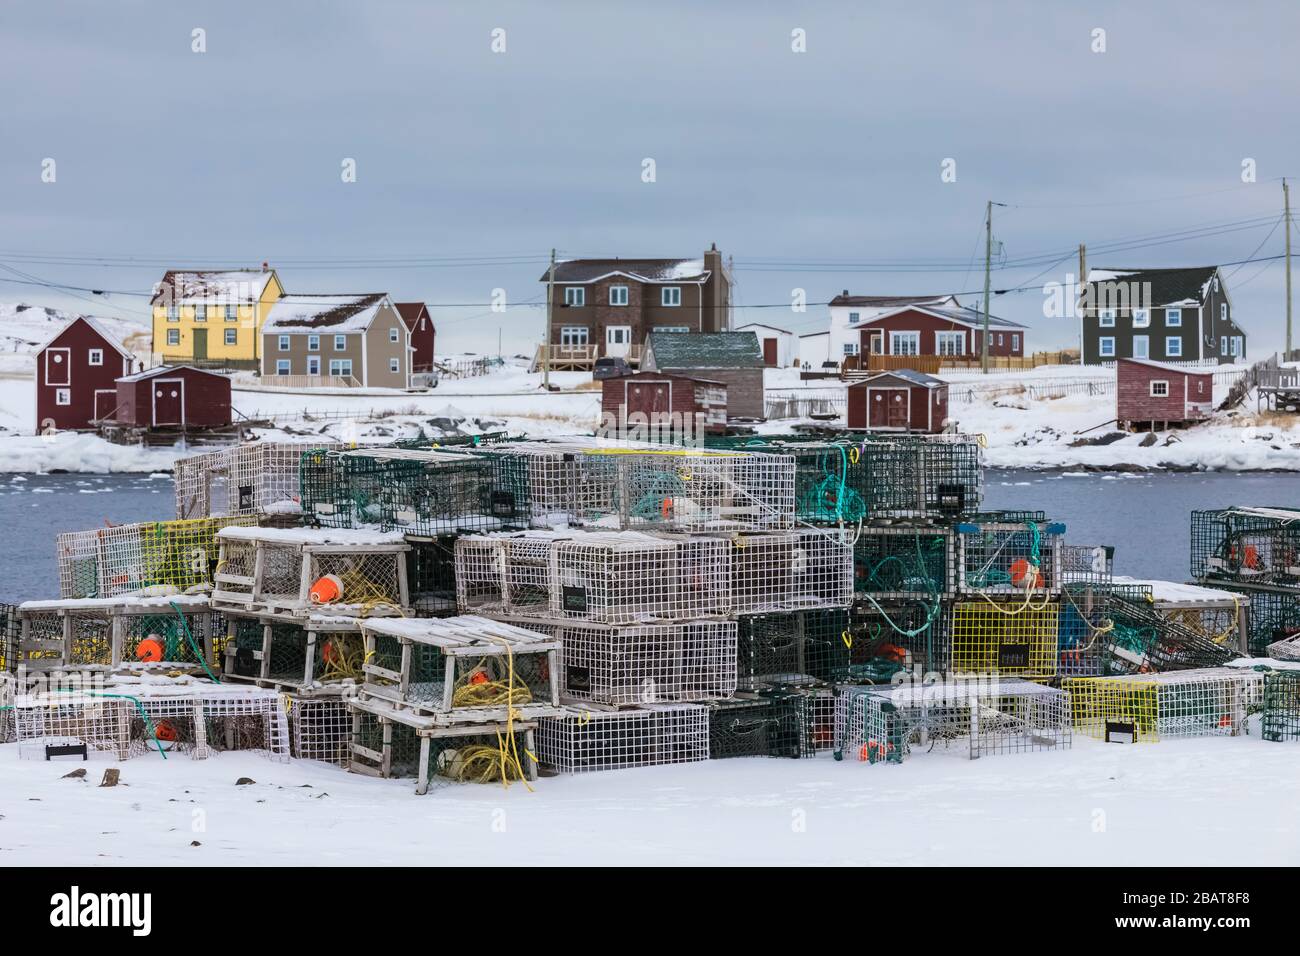 Aragoste pentole, palchi, e case lungo il porto basculante nel villaggio di pescatori storico di basculamento, sull'isola di Fogo in Terranova, Canada Foto Stock